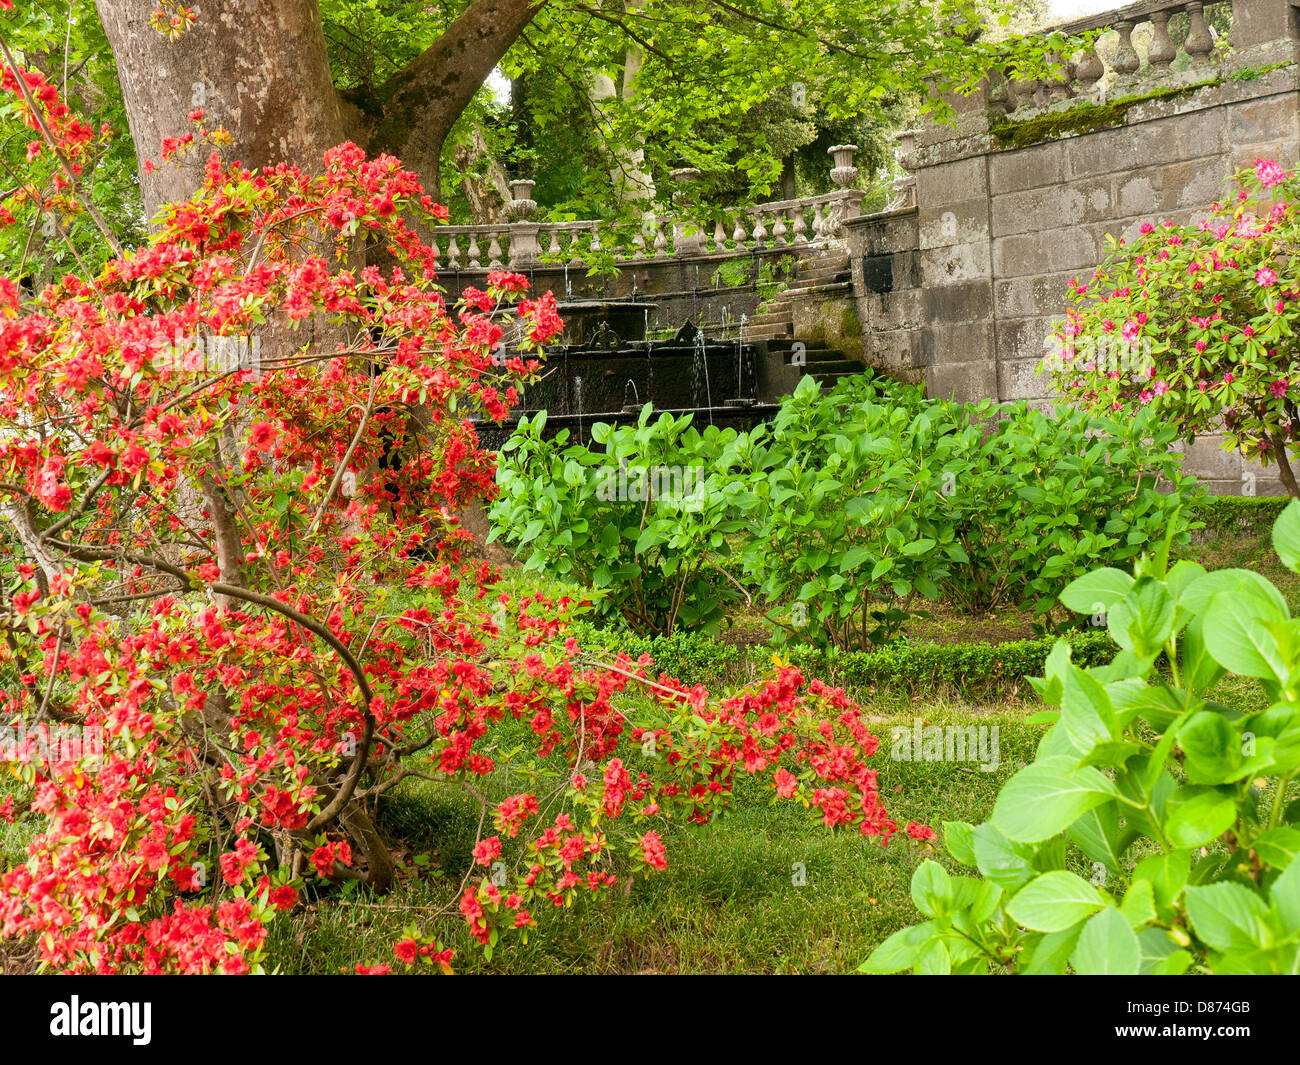 The enchanting gardens of Villa Lante in Bagnaia, Umbria, Italy Stock Photo